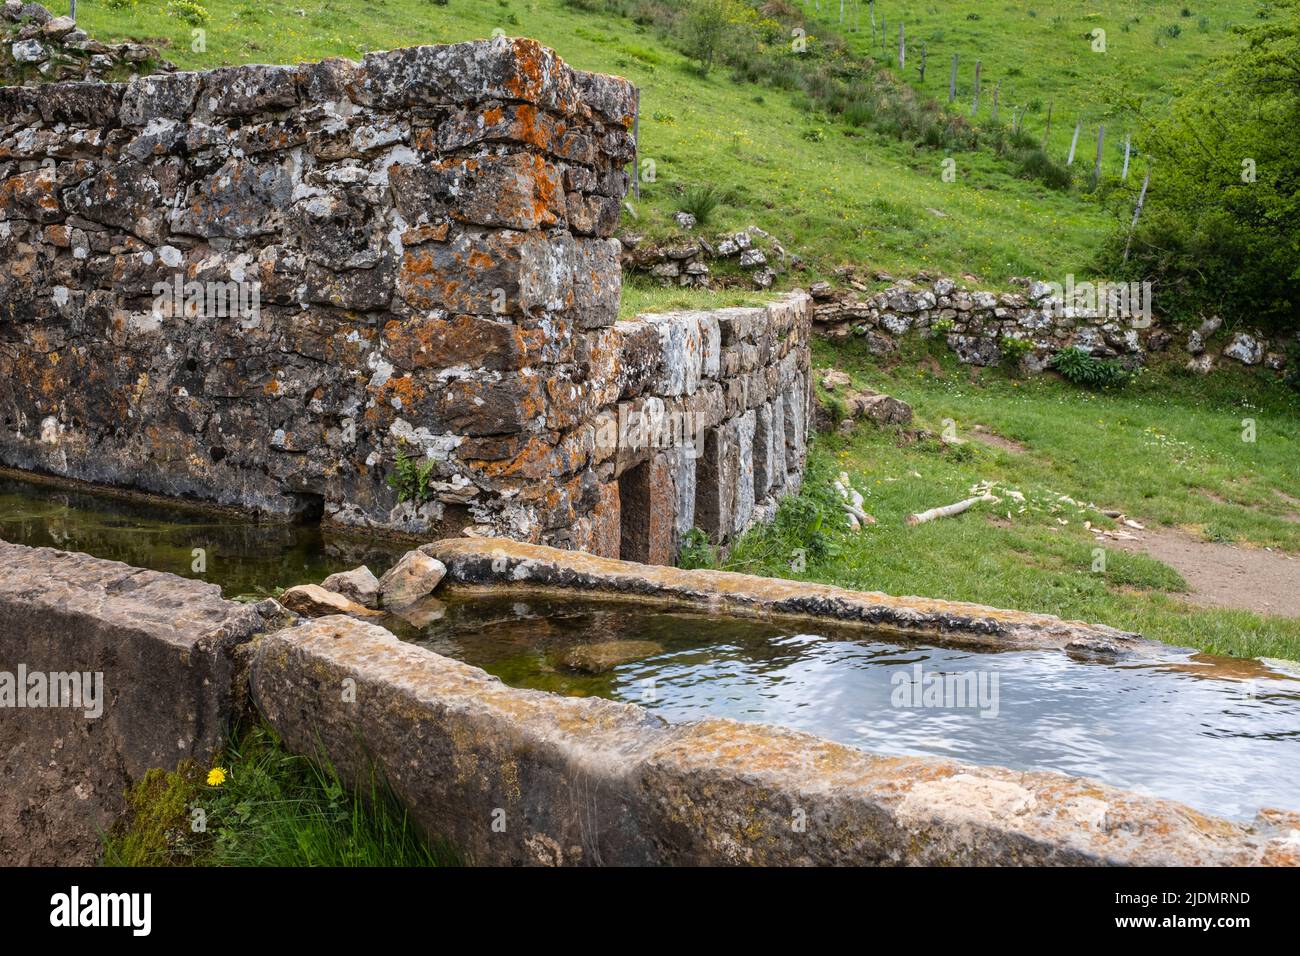 Spagna, Asturie. Parco Naturale di Somiedo. L'acqua fredda della sorgente della montagna raffredda il latte immagazzinato nei contenitori nel muro di pietra. Braña de Mumian. Foto Stock